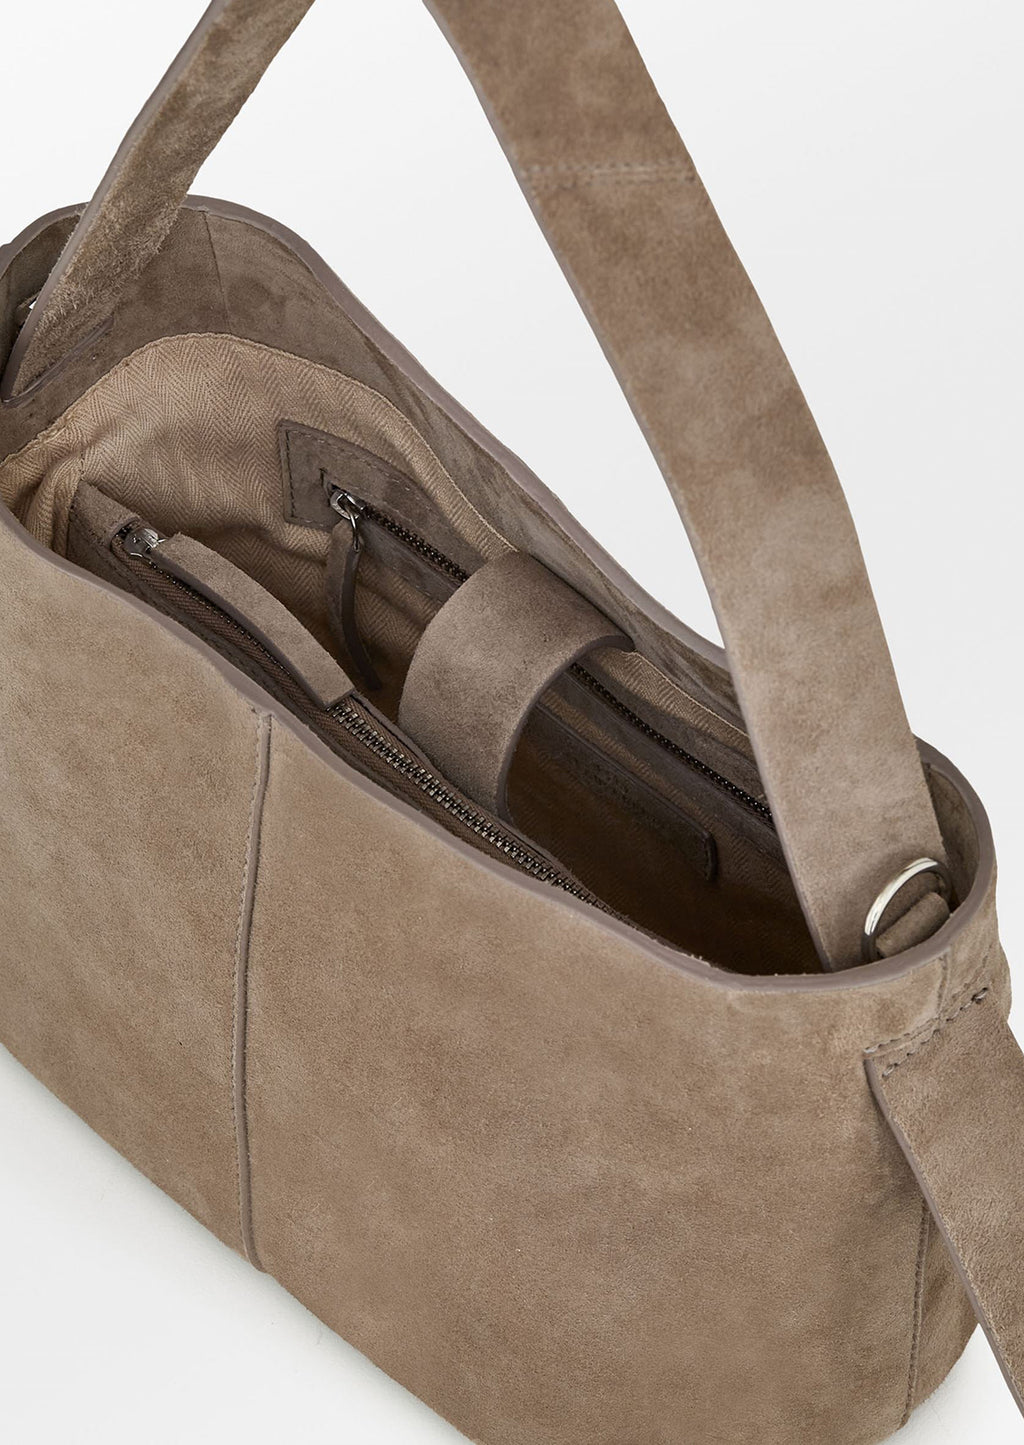 5: A suede handbag in mouse grey.